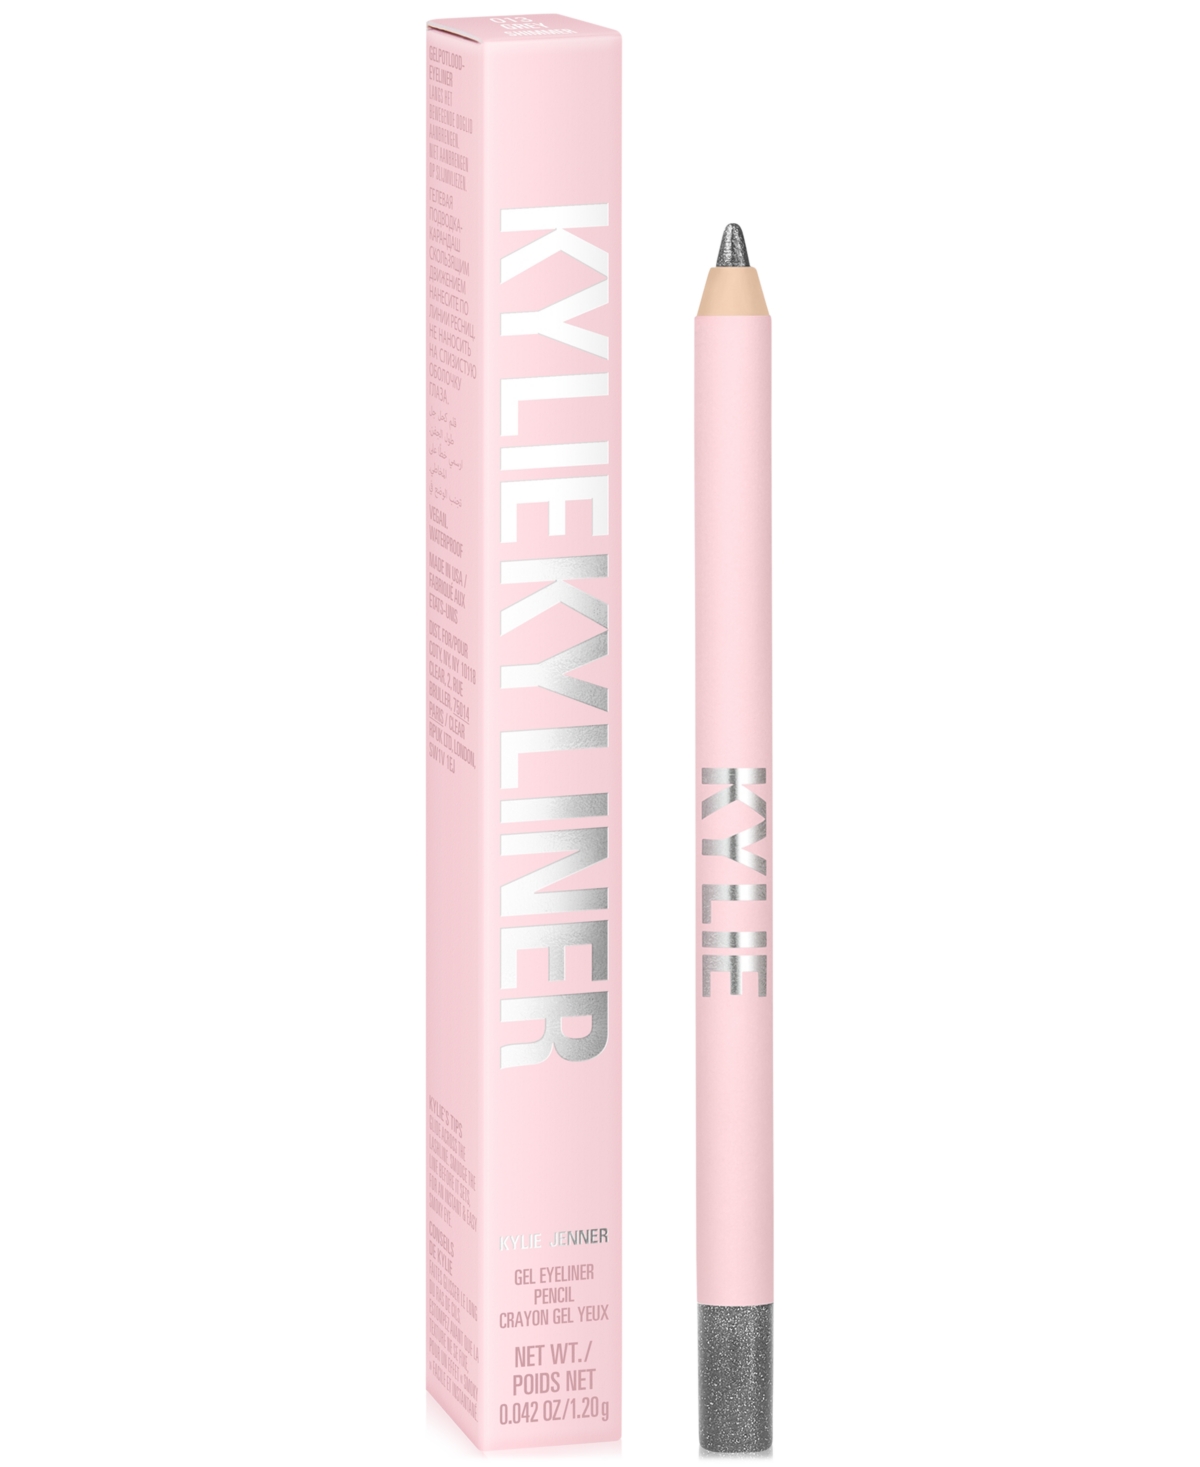 Kylie Cosmetics Kyliner Gel Eyeliner Pencil In Shimmery Grey